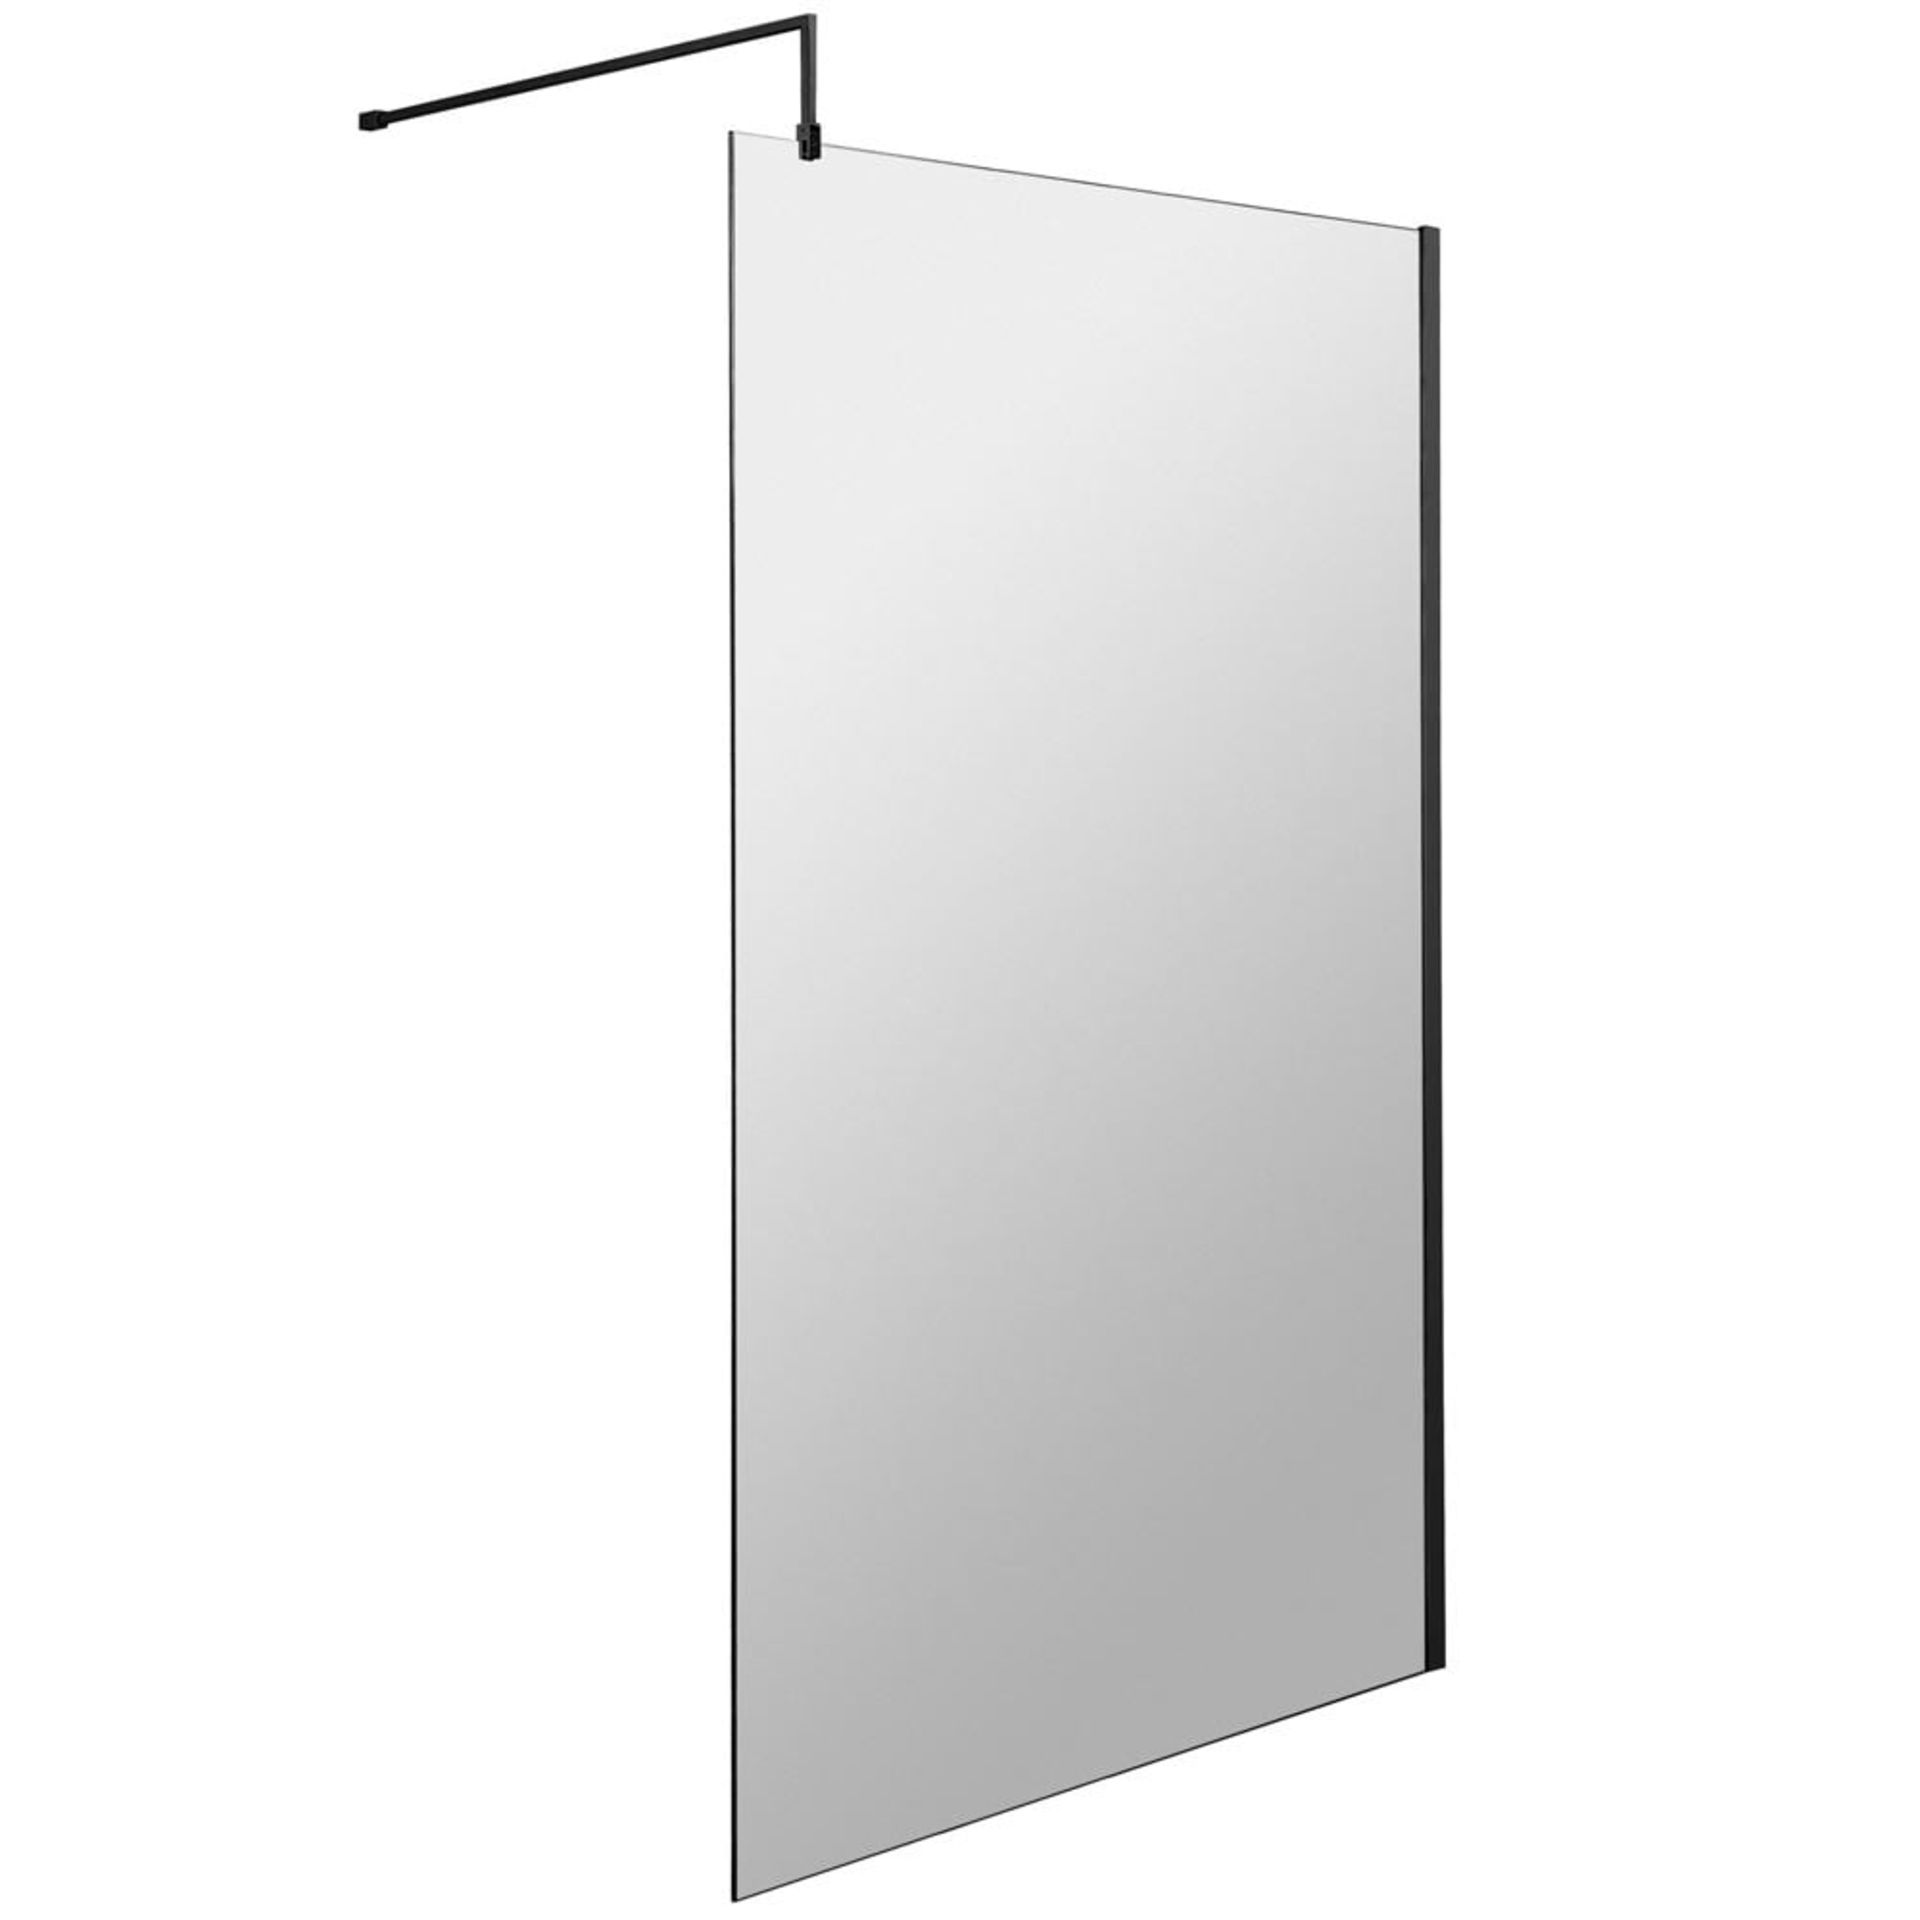 (SUP62) New 1200mm -8mm- Designer Black Framed Wetroom Panel. The Framed Beauty Black Framed - Image 2 of 2